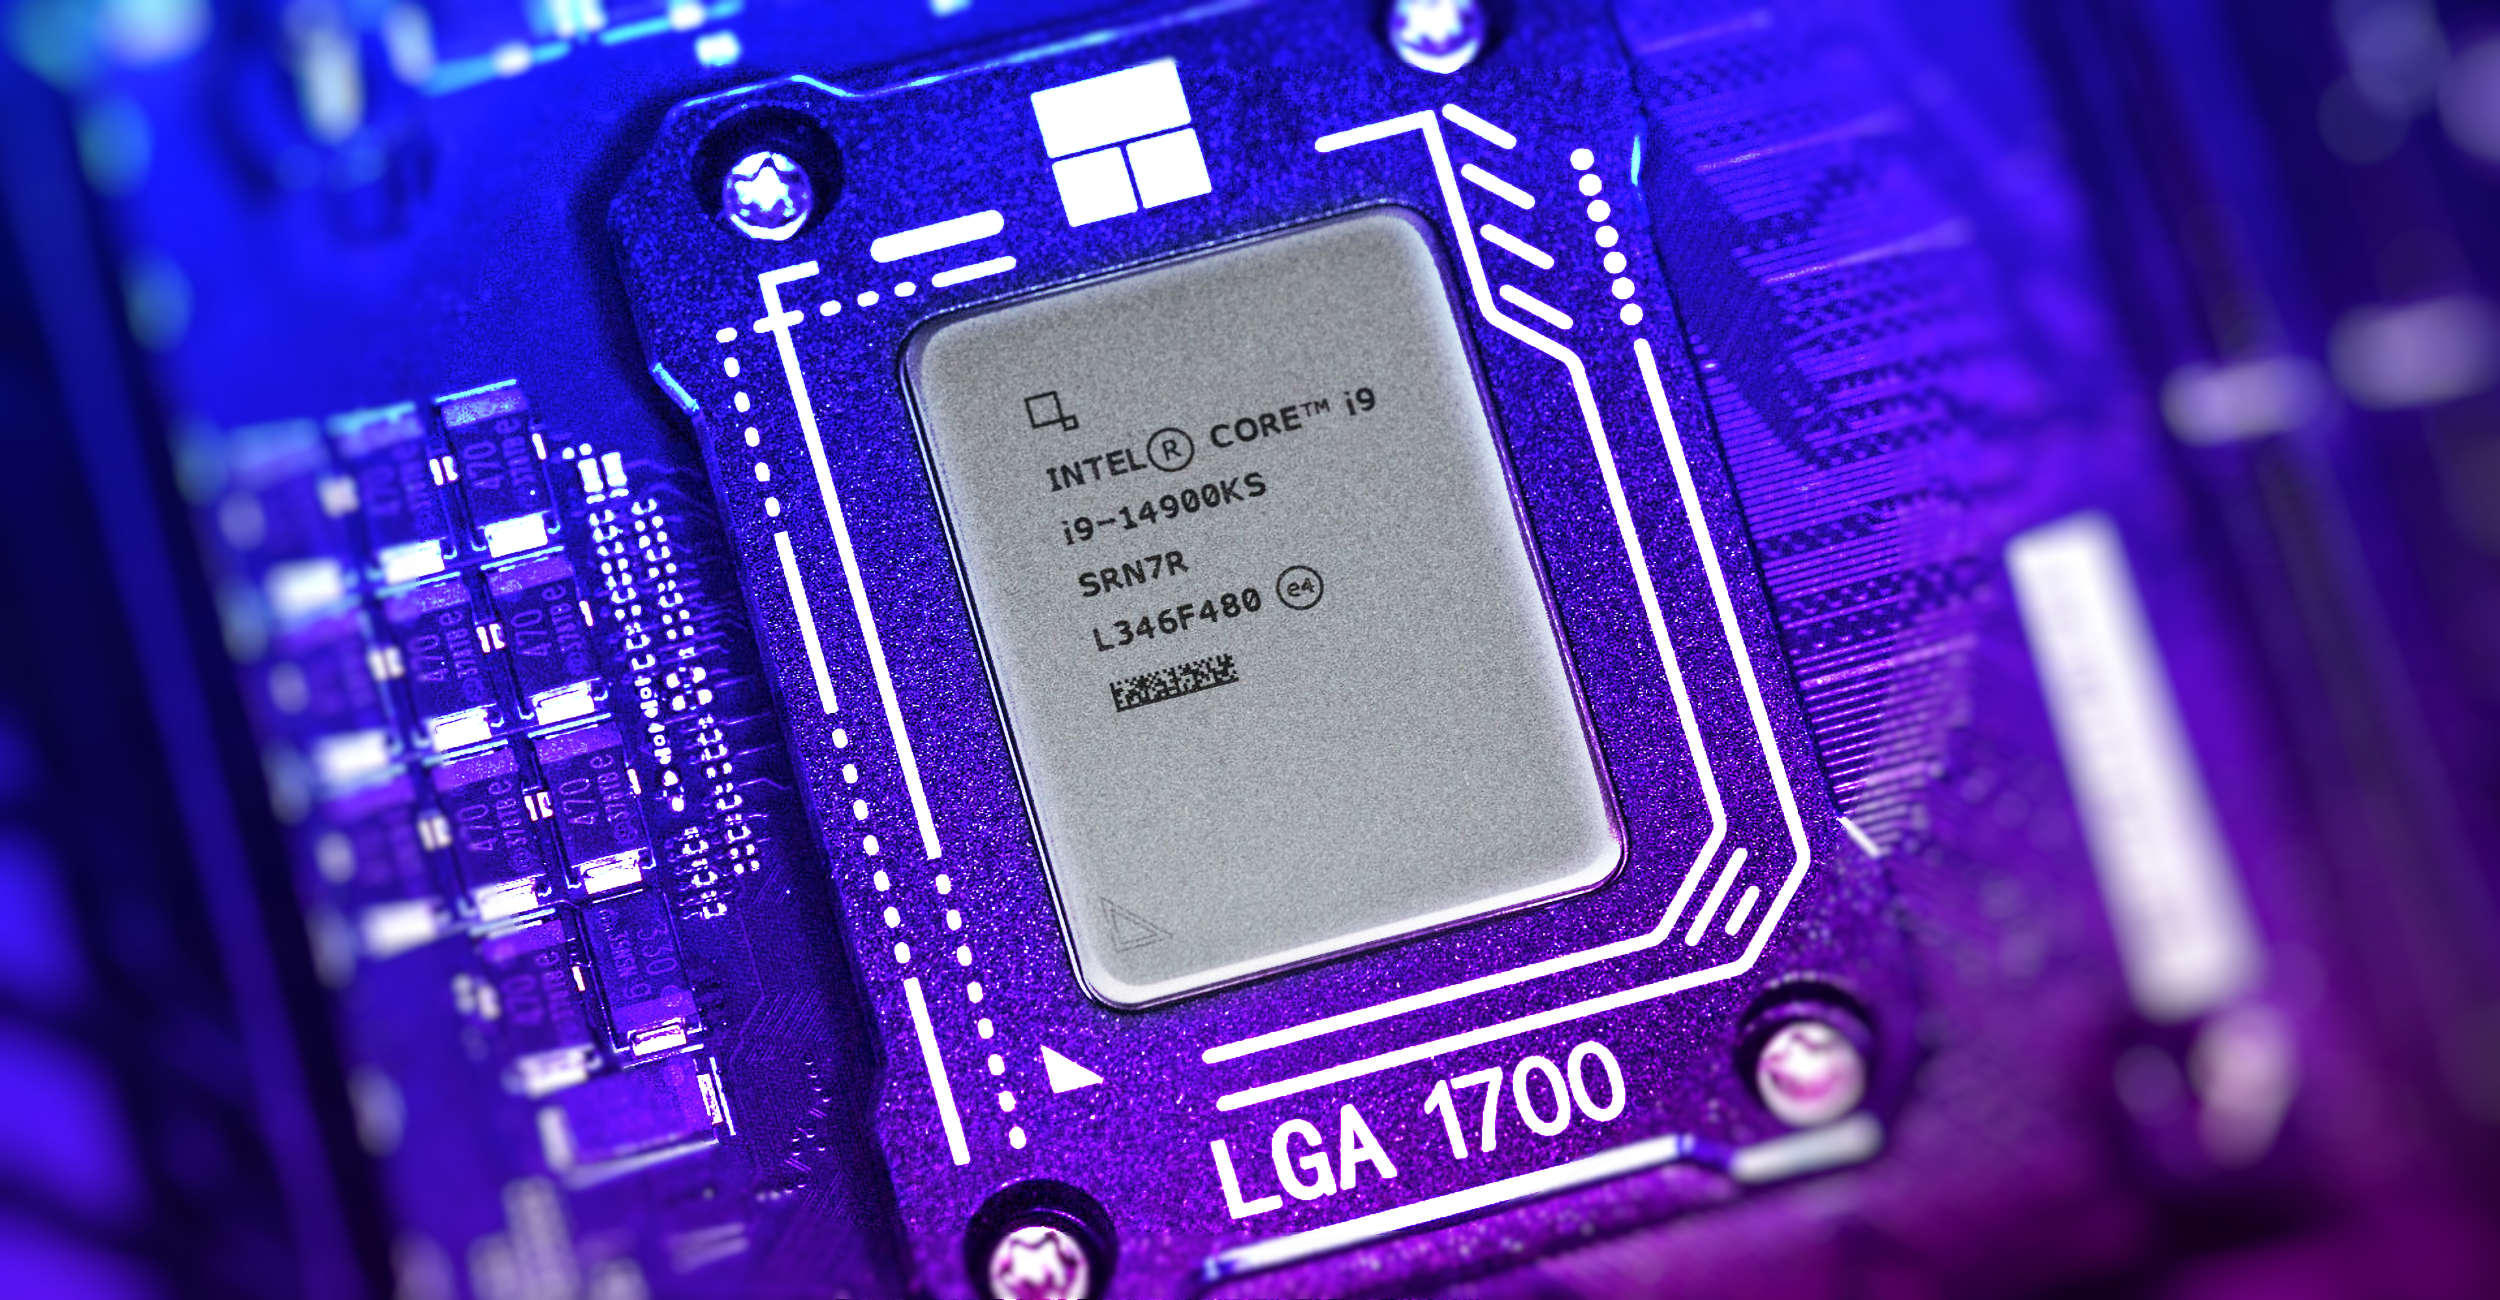 Intel unveils Intel Core 14th Gen i9-14900KS desktop processors